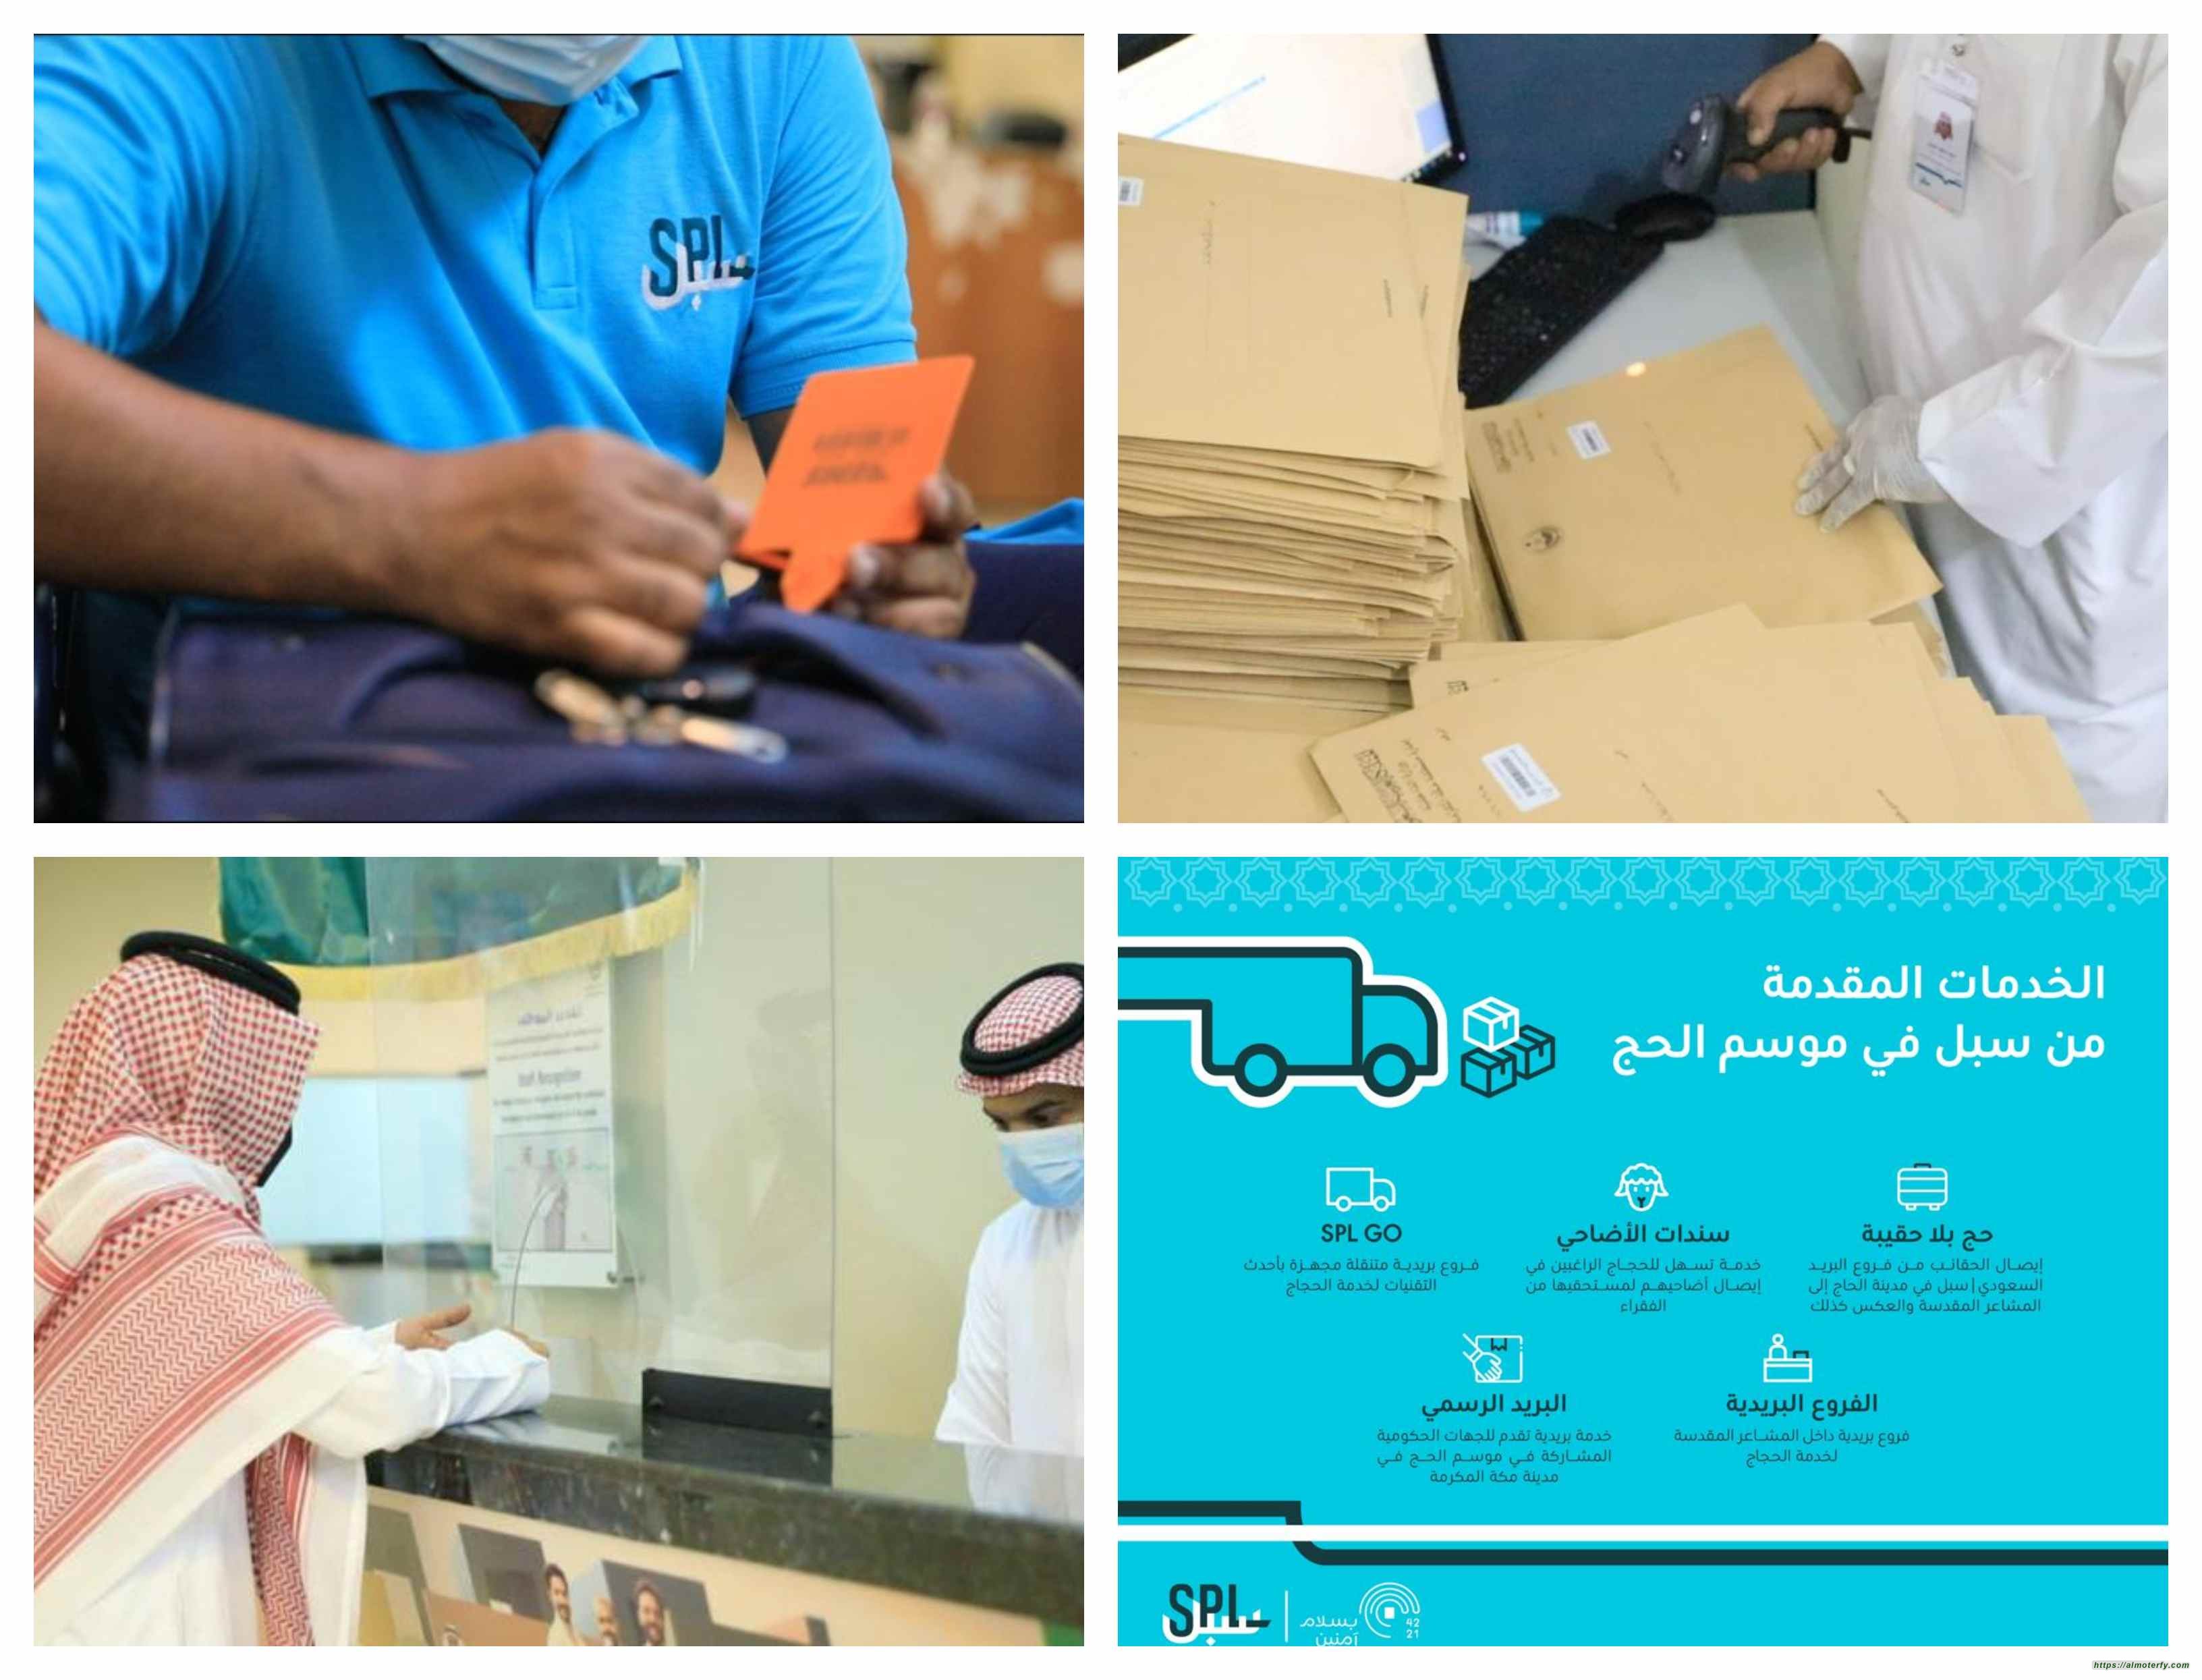 البريد السعودي |سبل يكمل استعداداته لخدمة ضيوف الرحمن